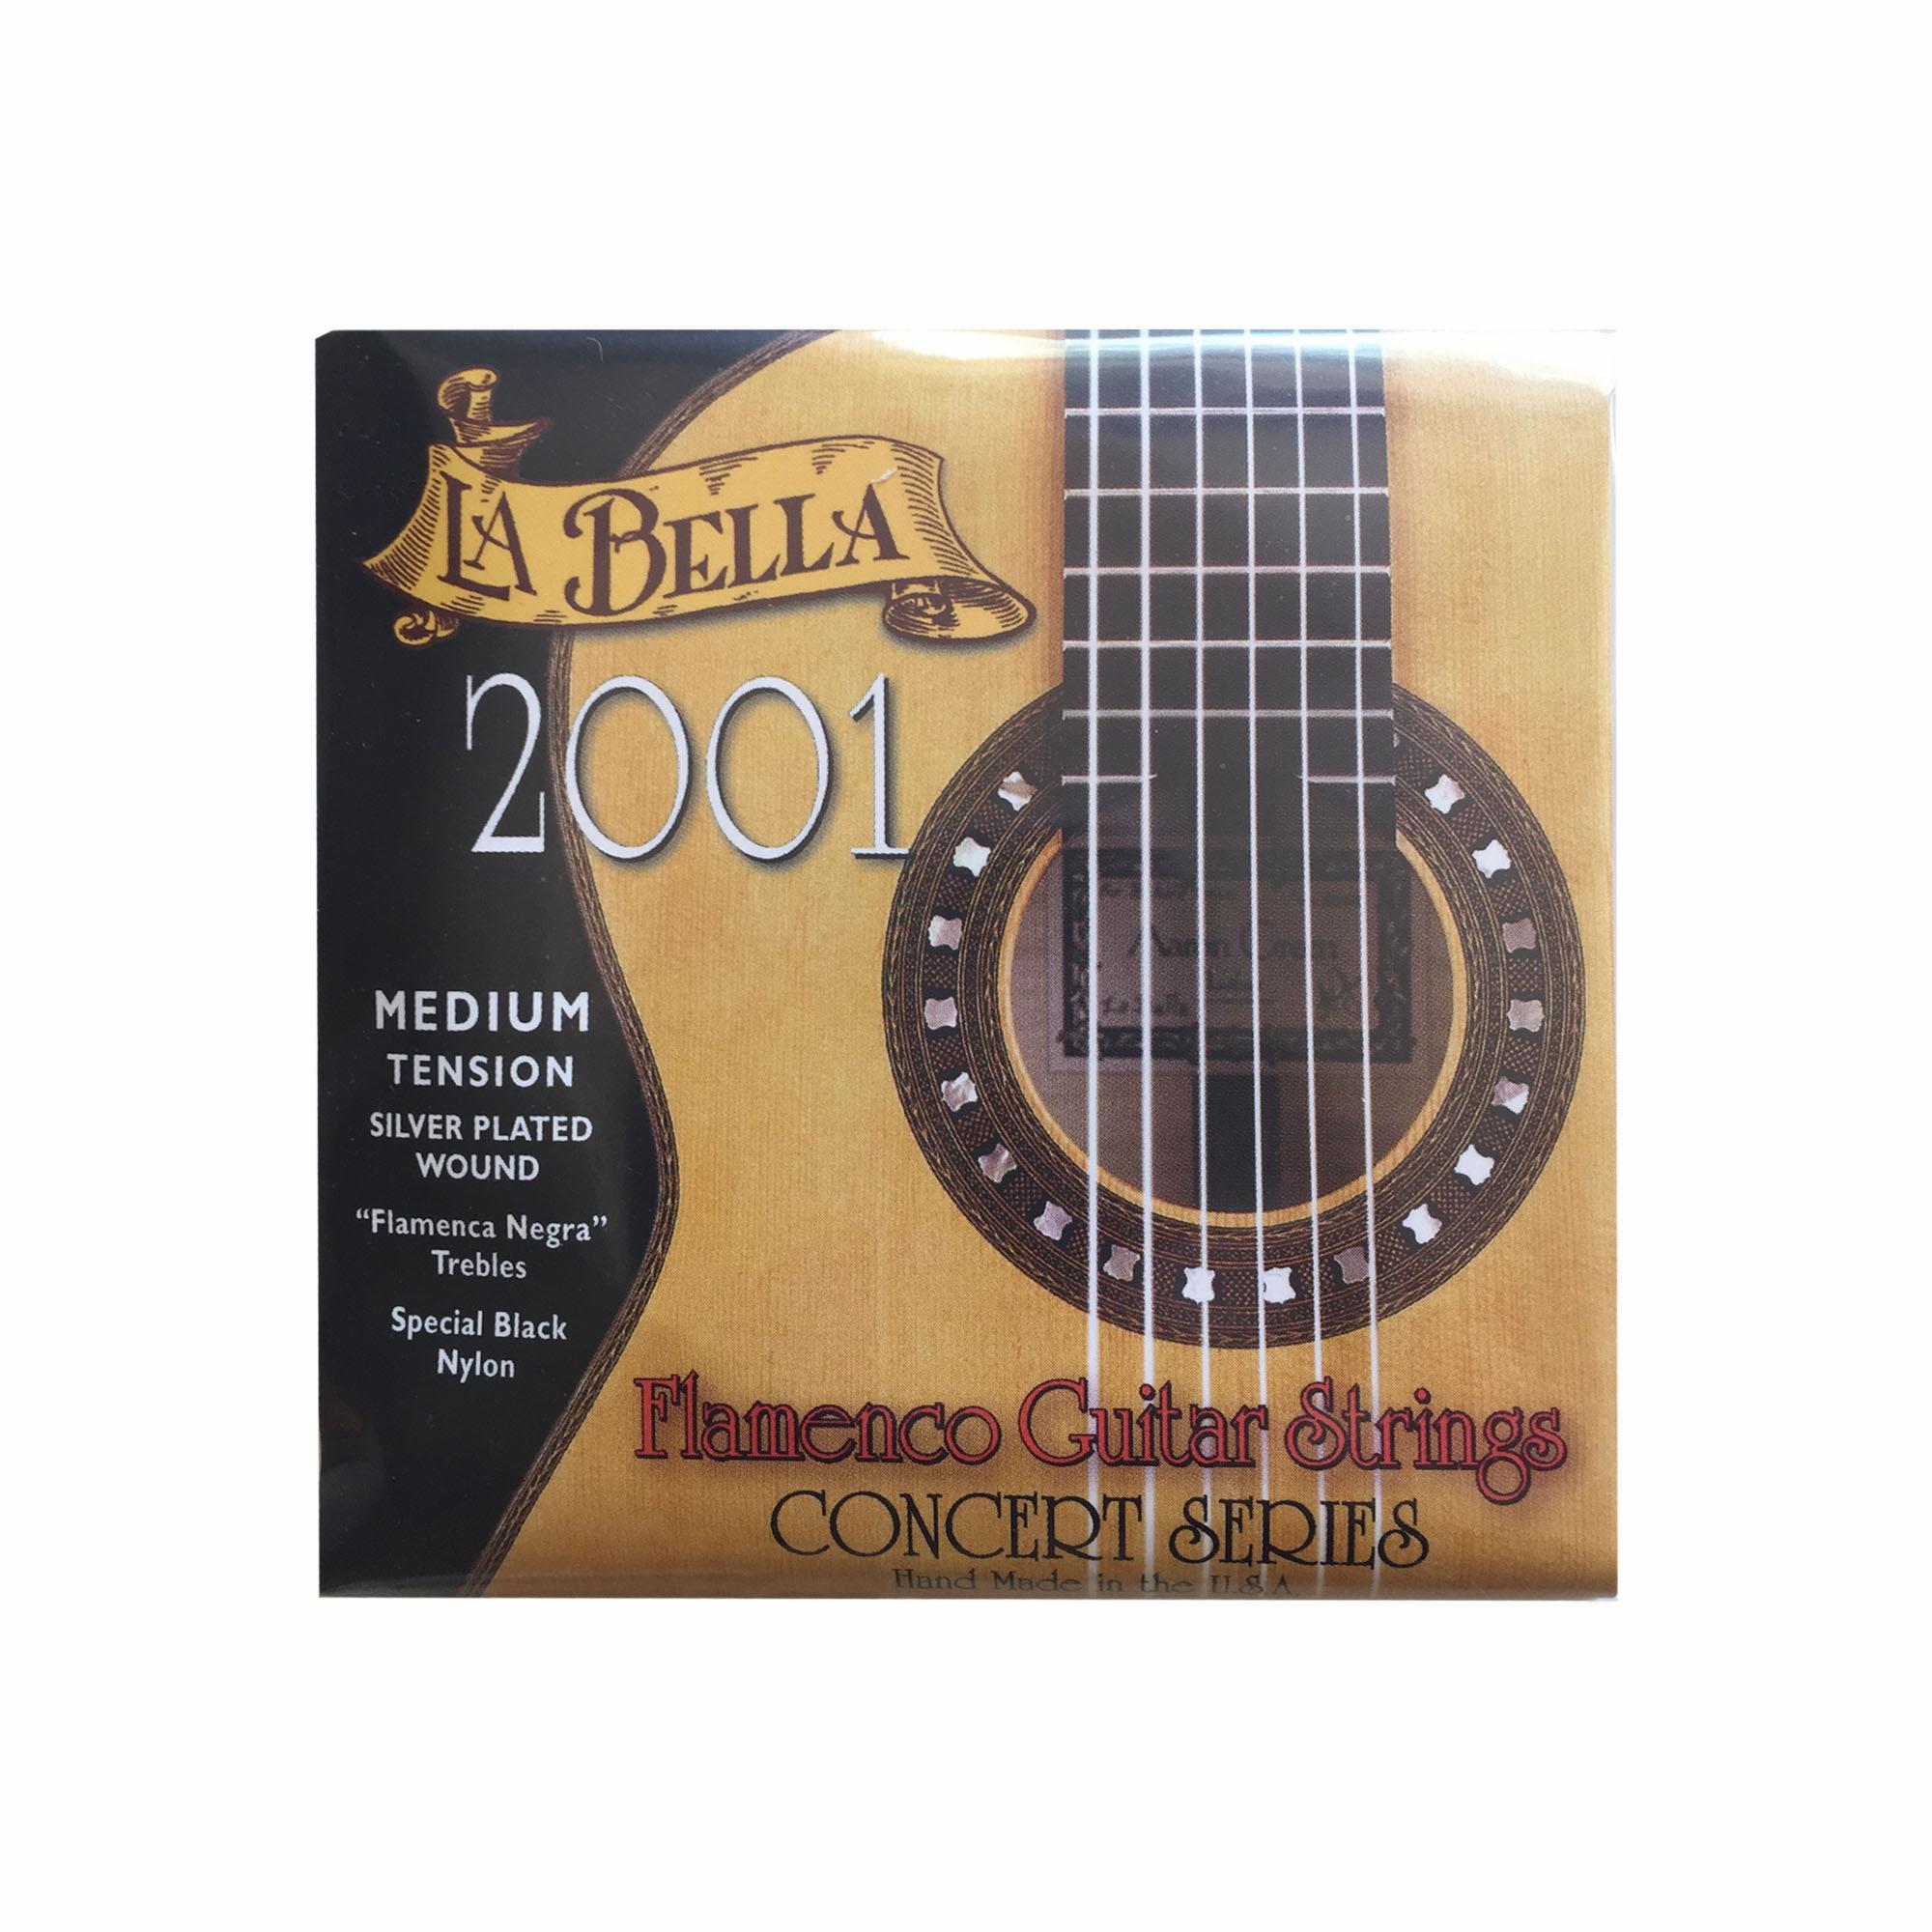 La Bella 2001 Flamenco Concert Series Guitar Strings